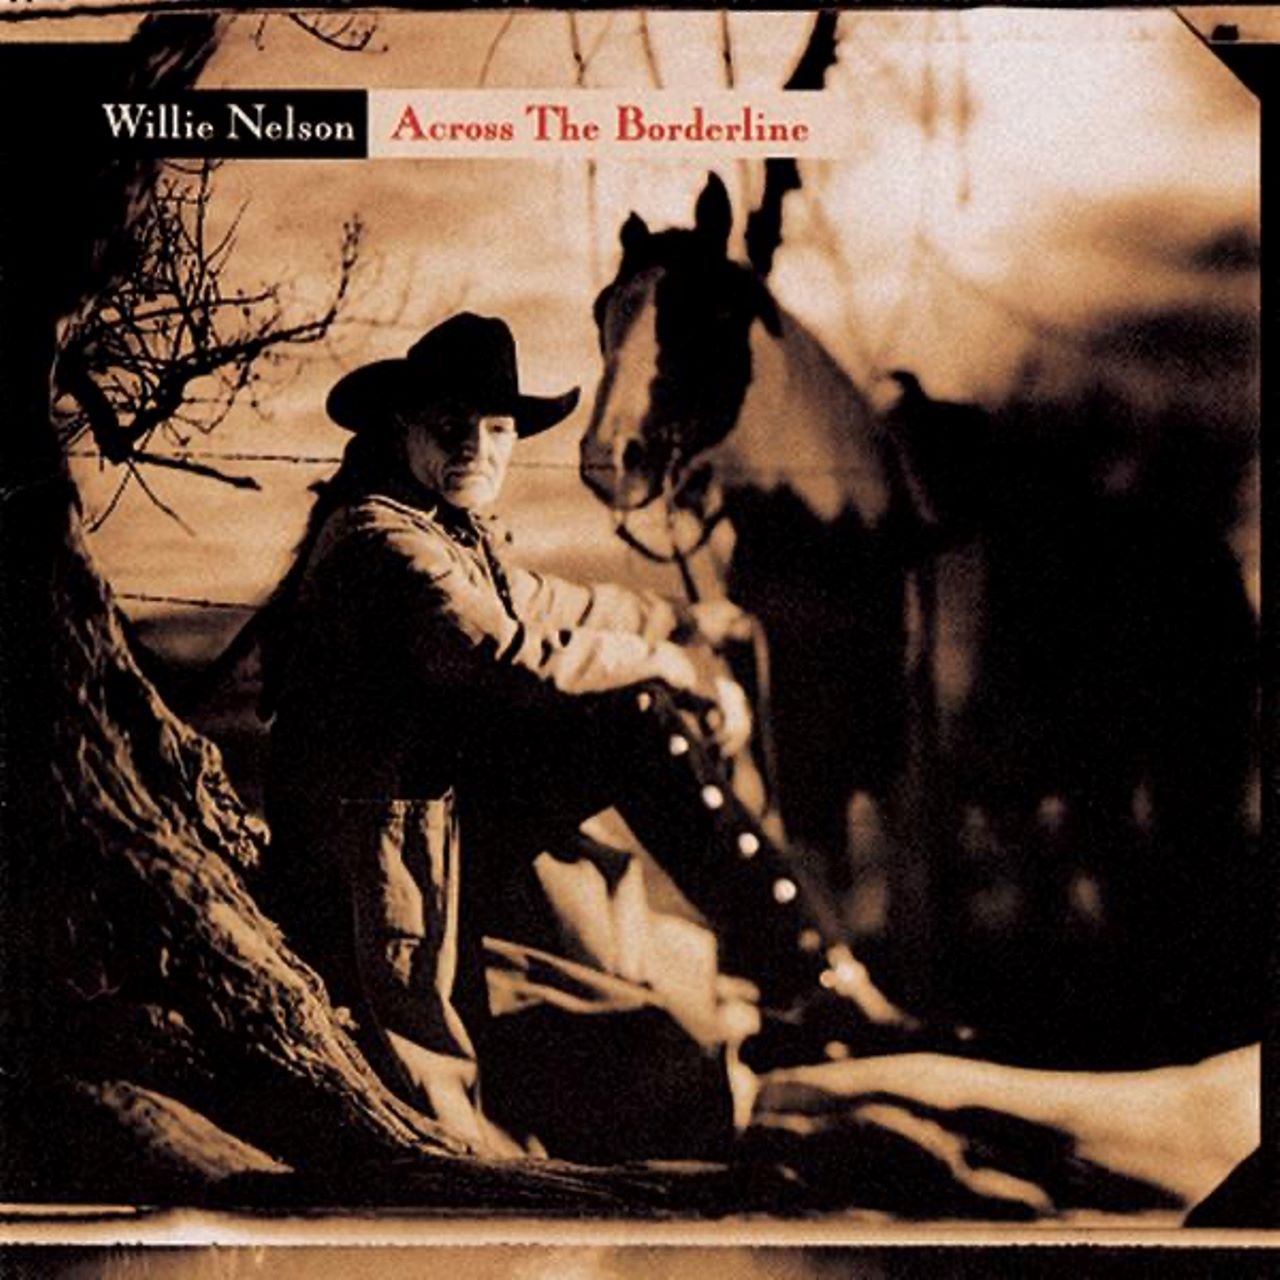 Willie Nelson – Across The Borderline cover album